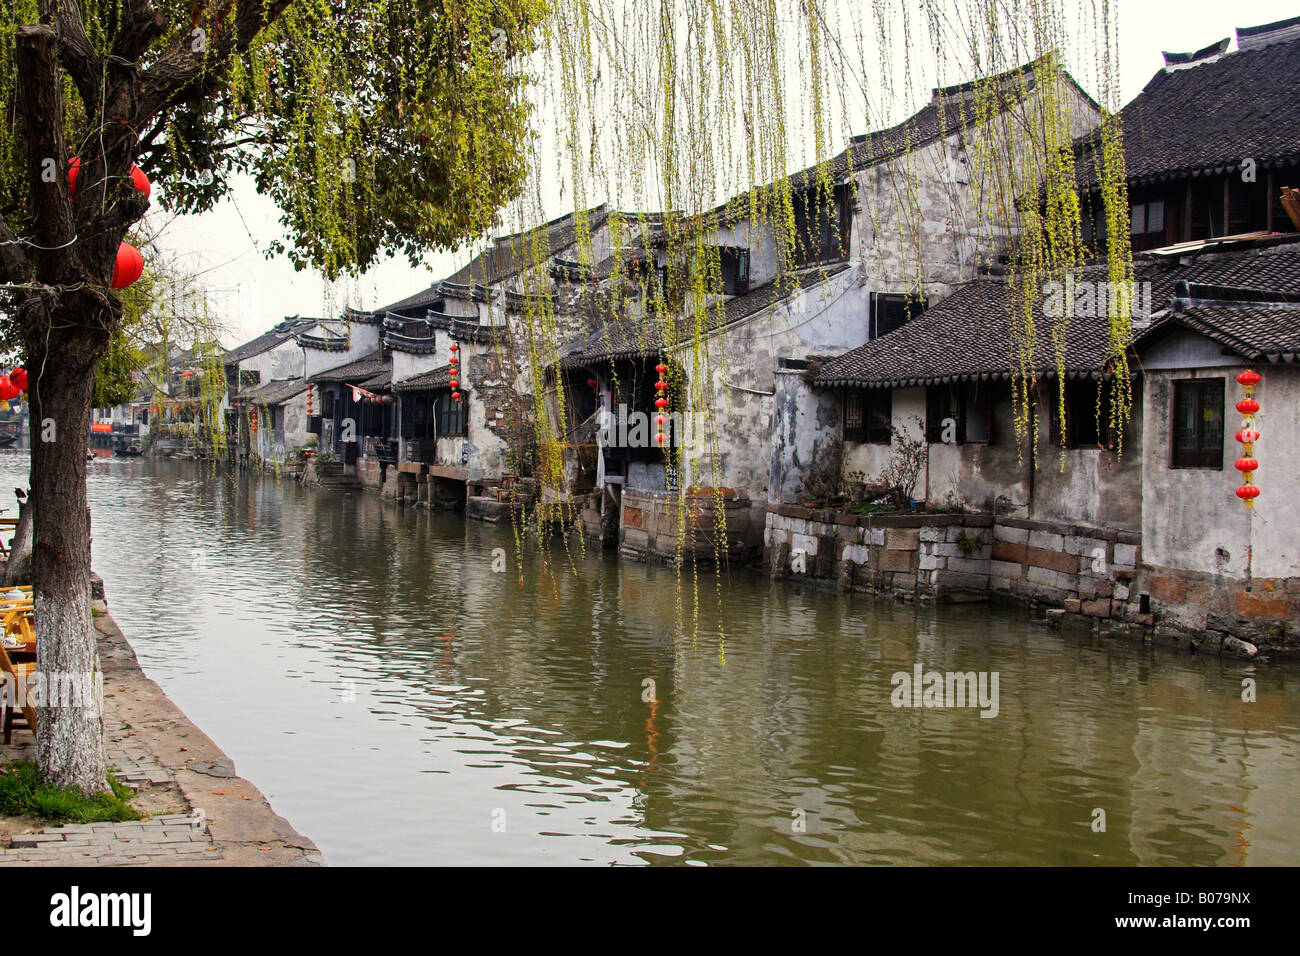 The Canal At Xitang China Stock Photo